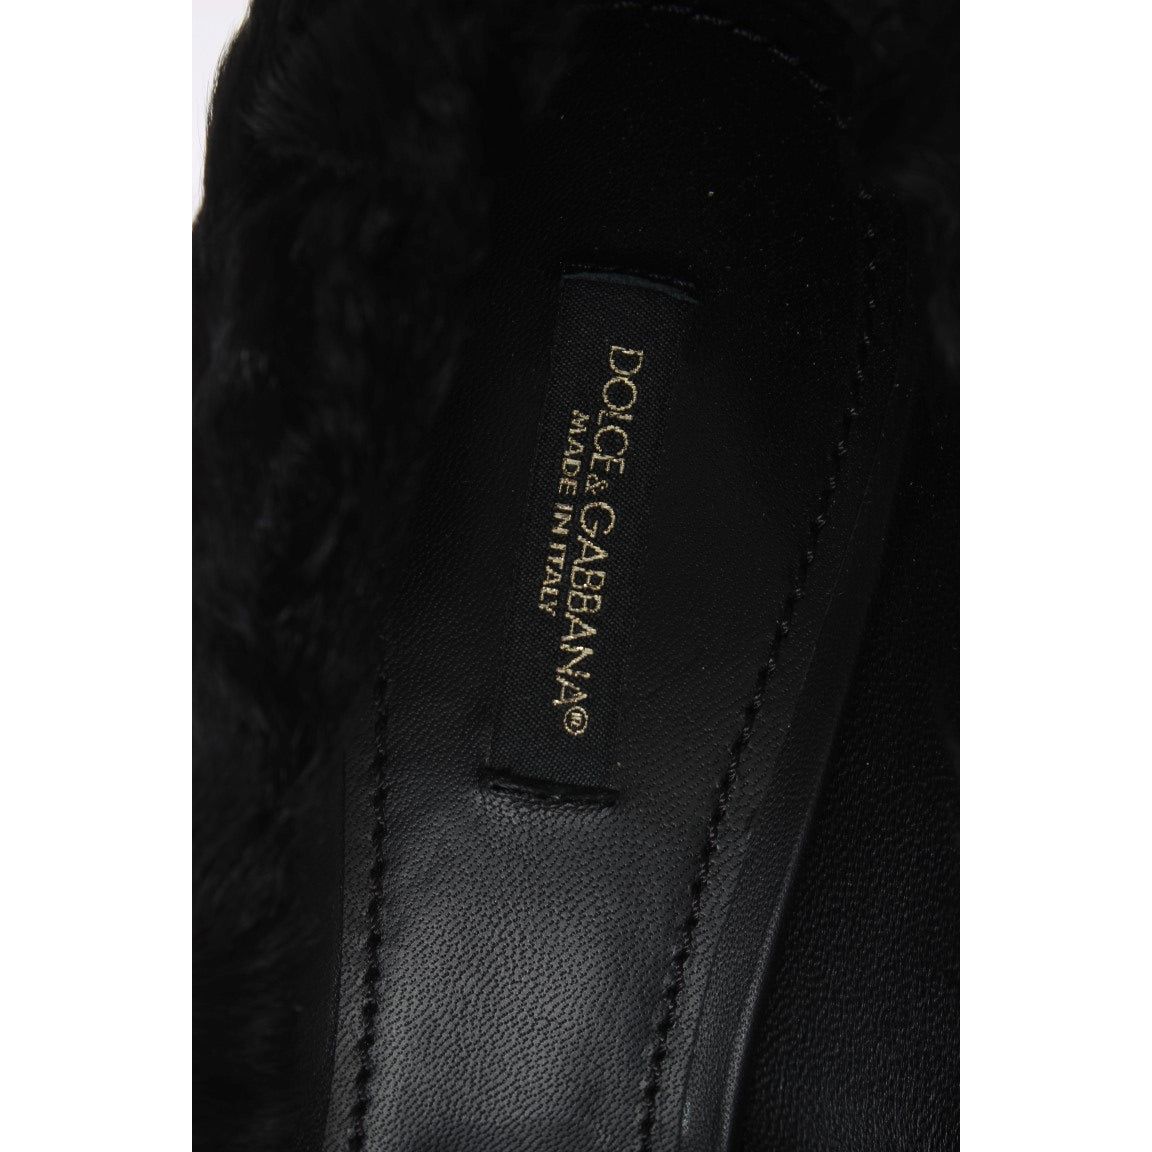 Dolce & Gabbana Elegant Pumps in Luxe Xiangao Fur Leather black-xiangao-lamb-fur-leather-pumps